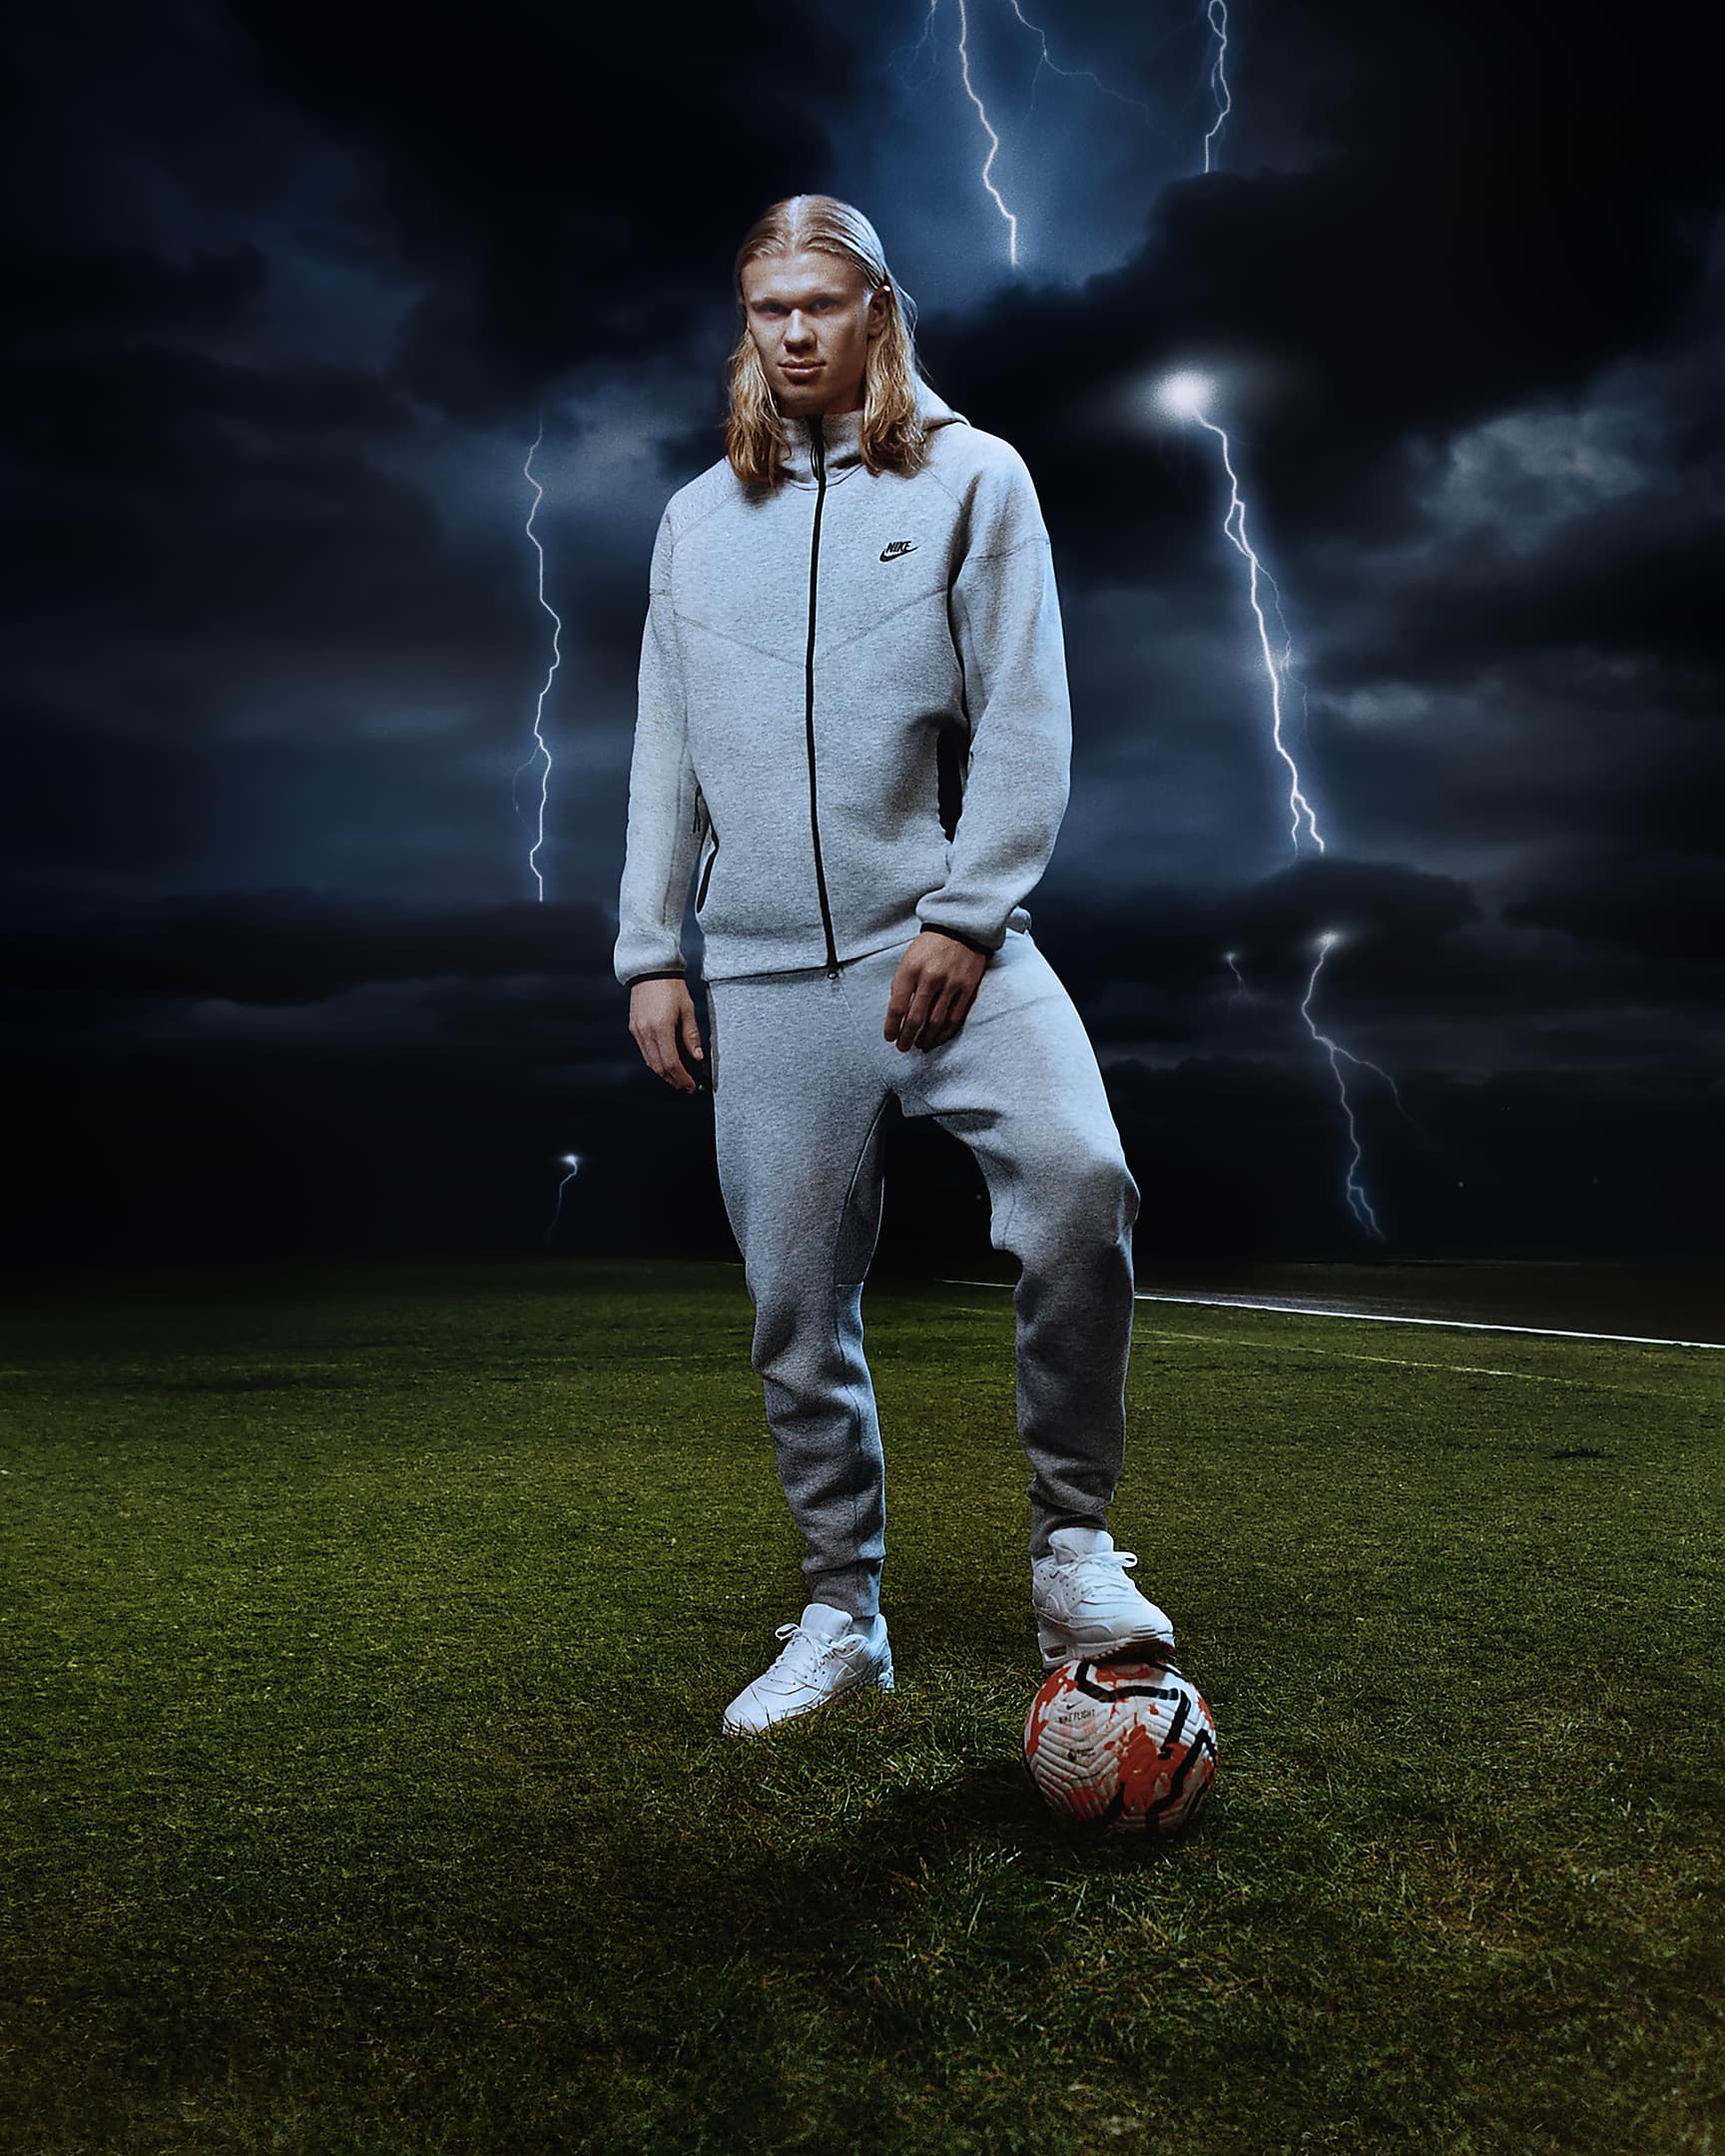 Nike Sportswear Tech Fleece Men's Joggers - Dark Grey Heather/Black